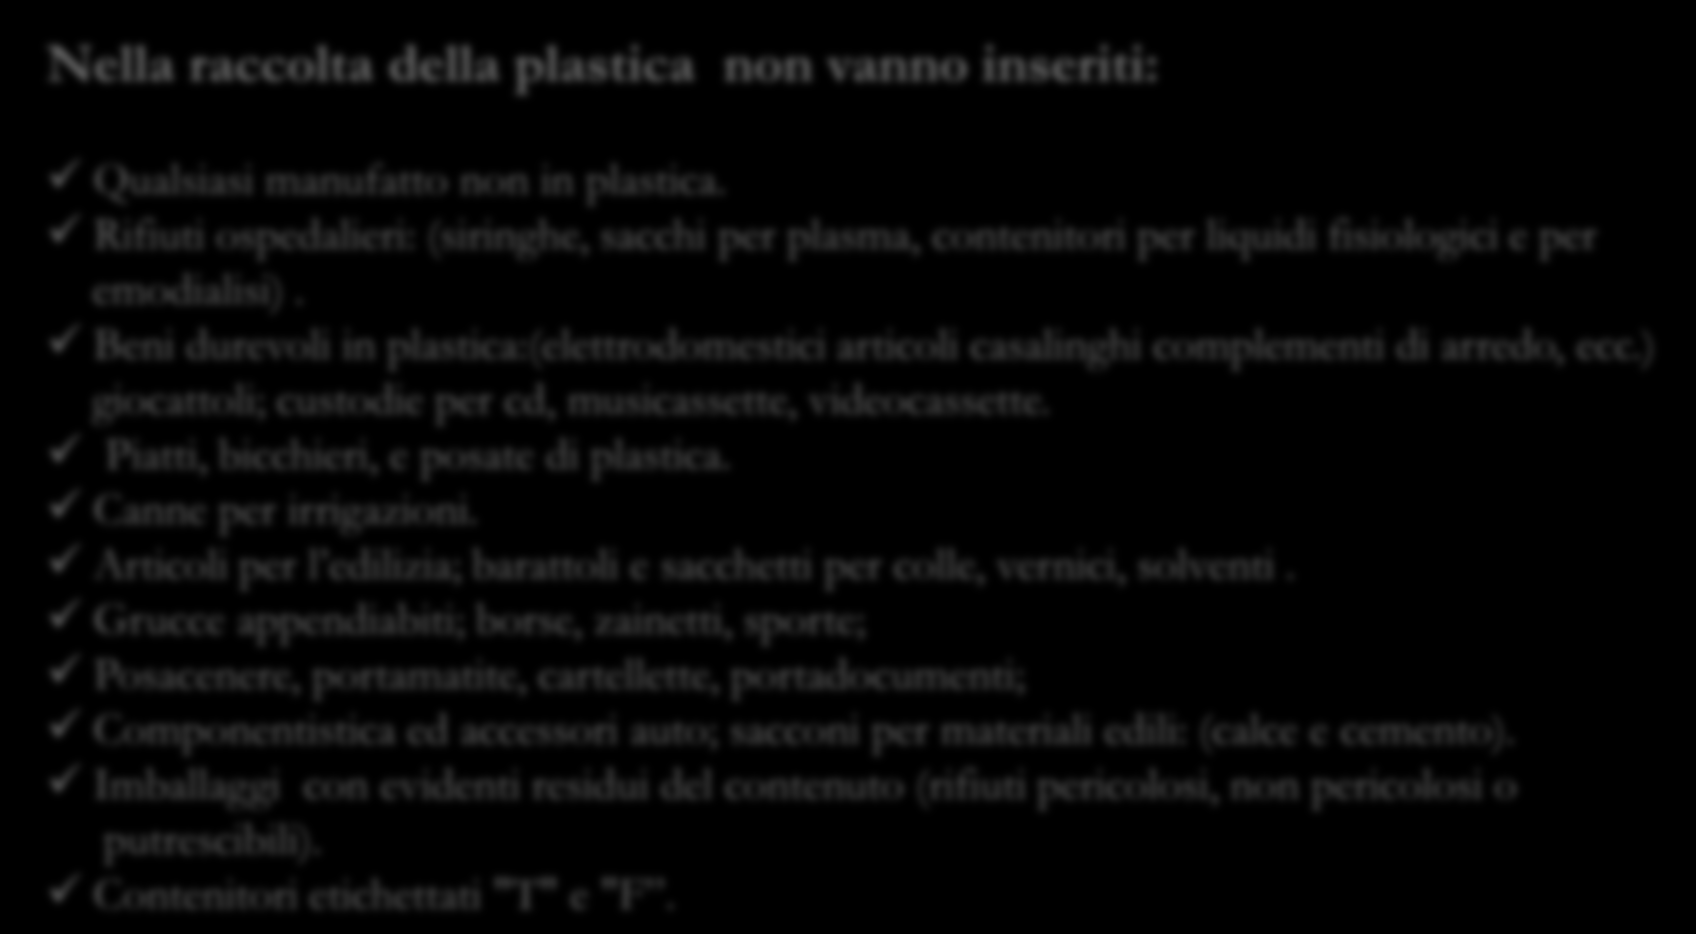 Plastica Nella della plastica non vanno inseriti: 3. calendario Qualsiasi manufatto non in plastica.